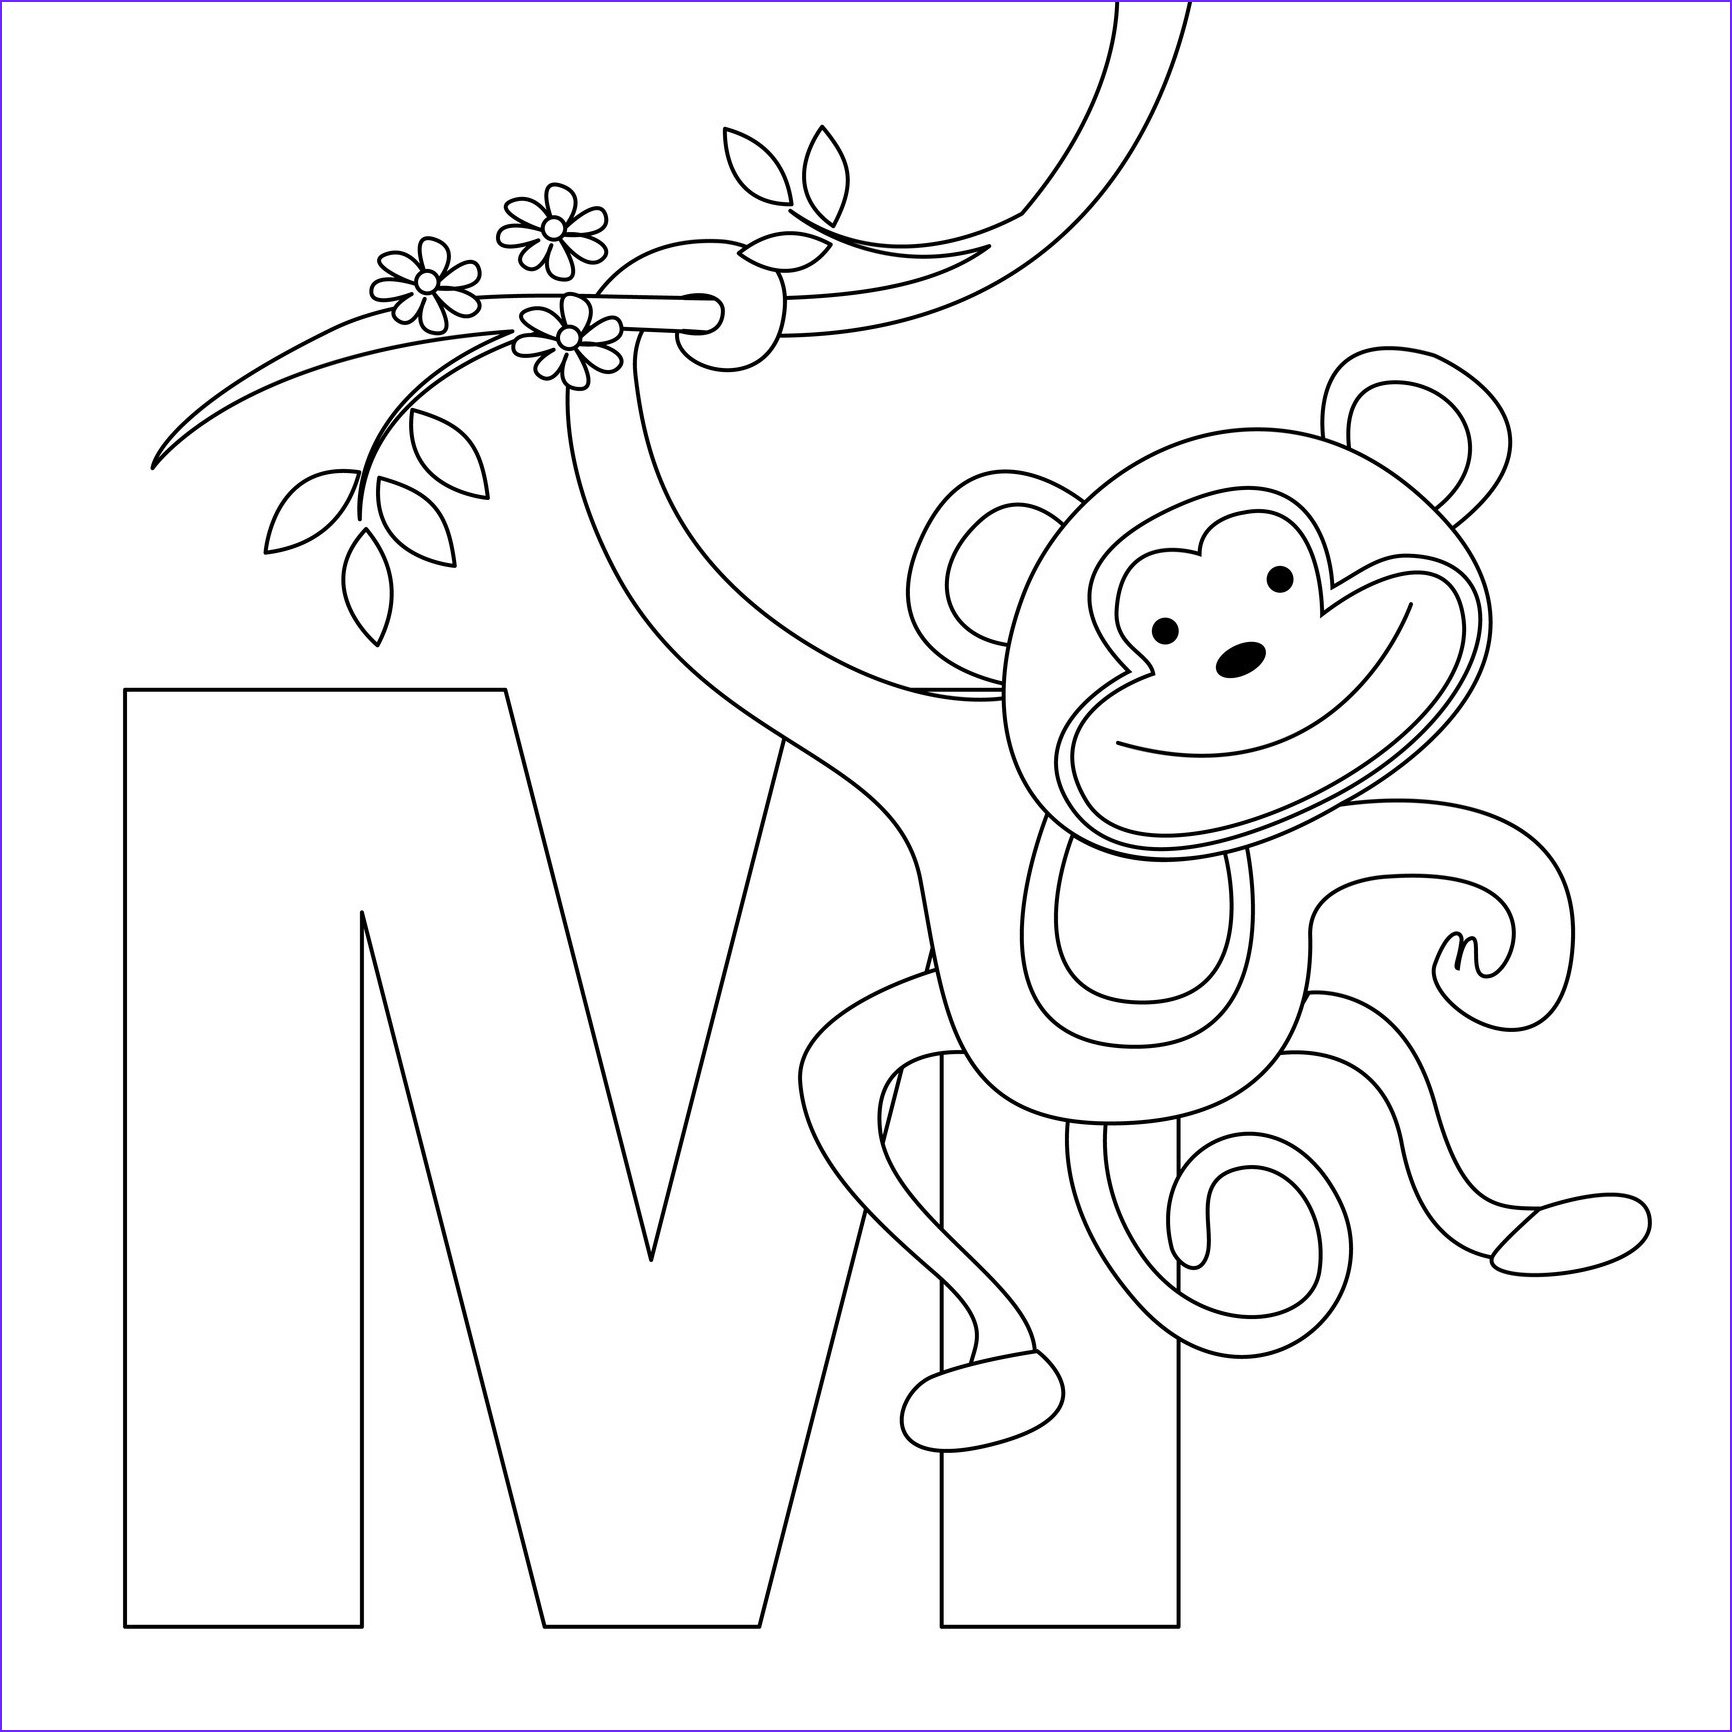 Tranh tô màu chữ cái M monkey